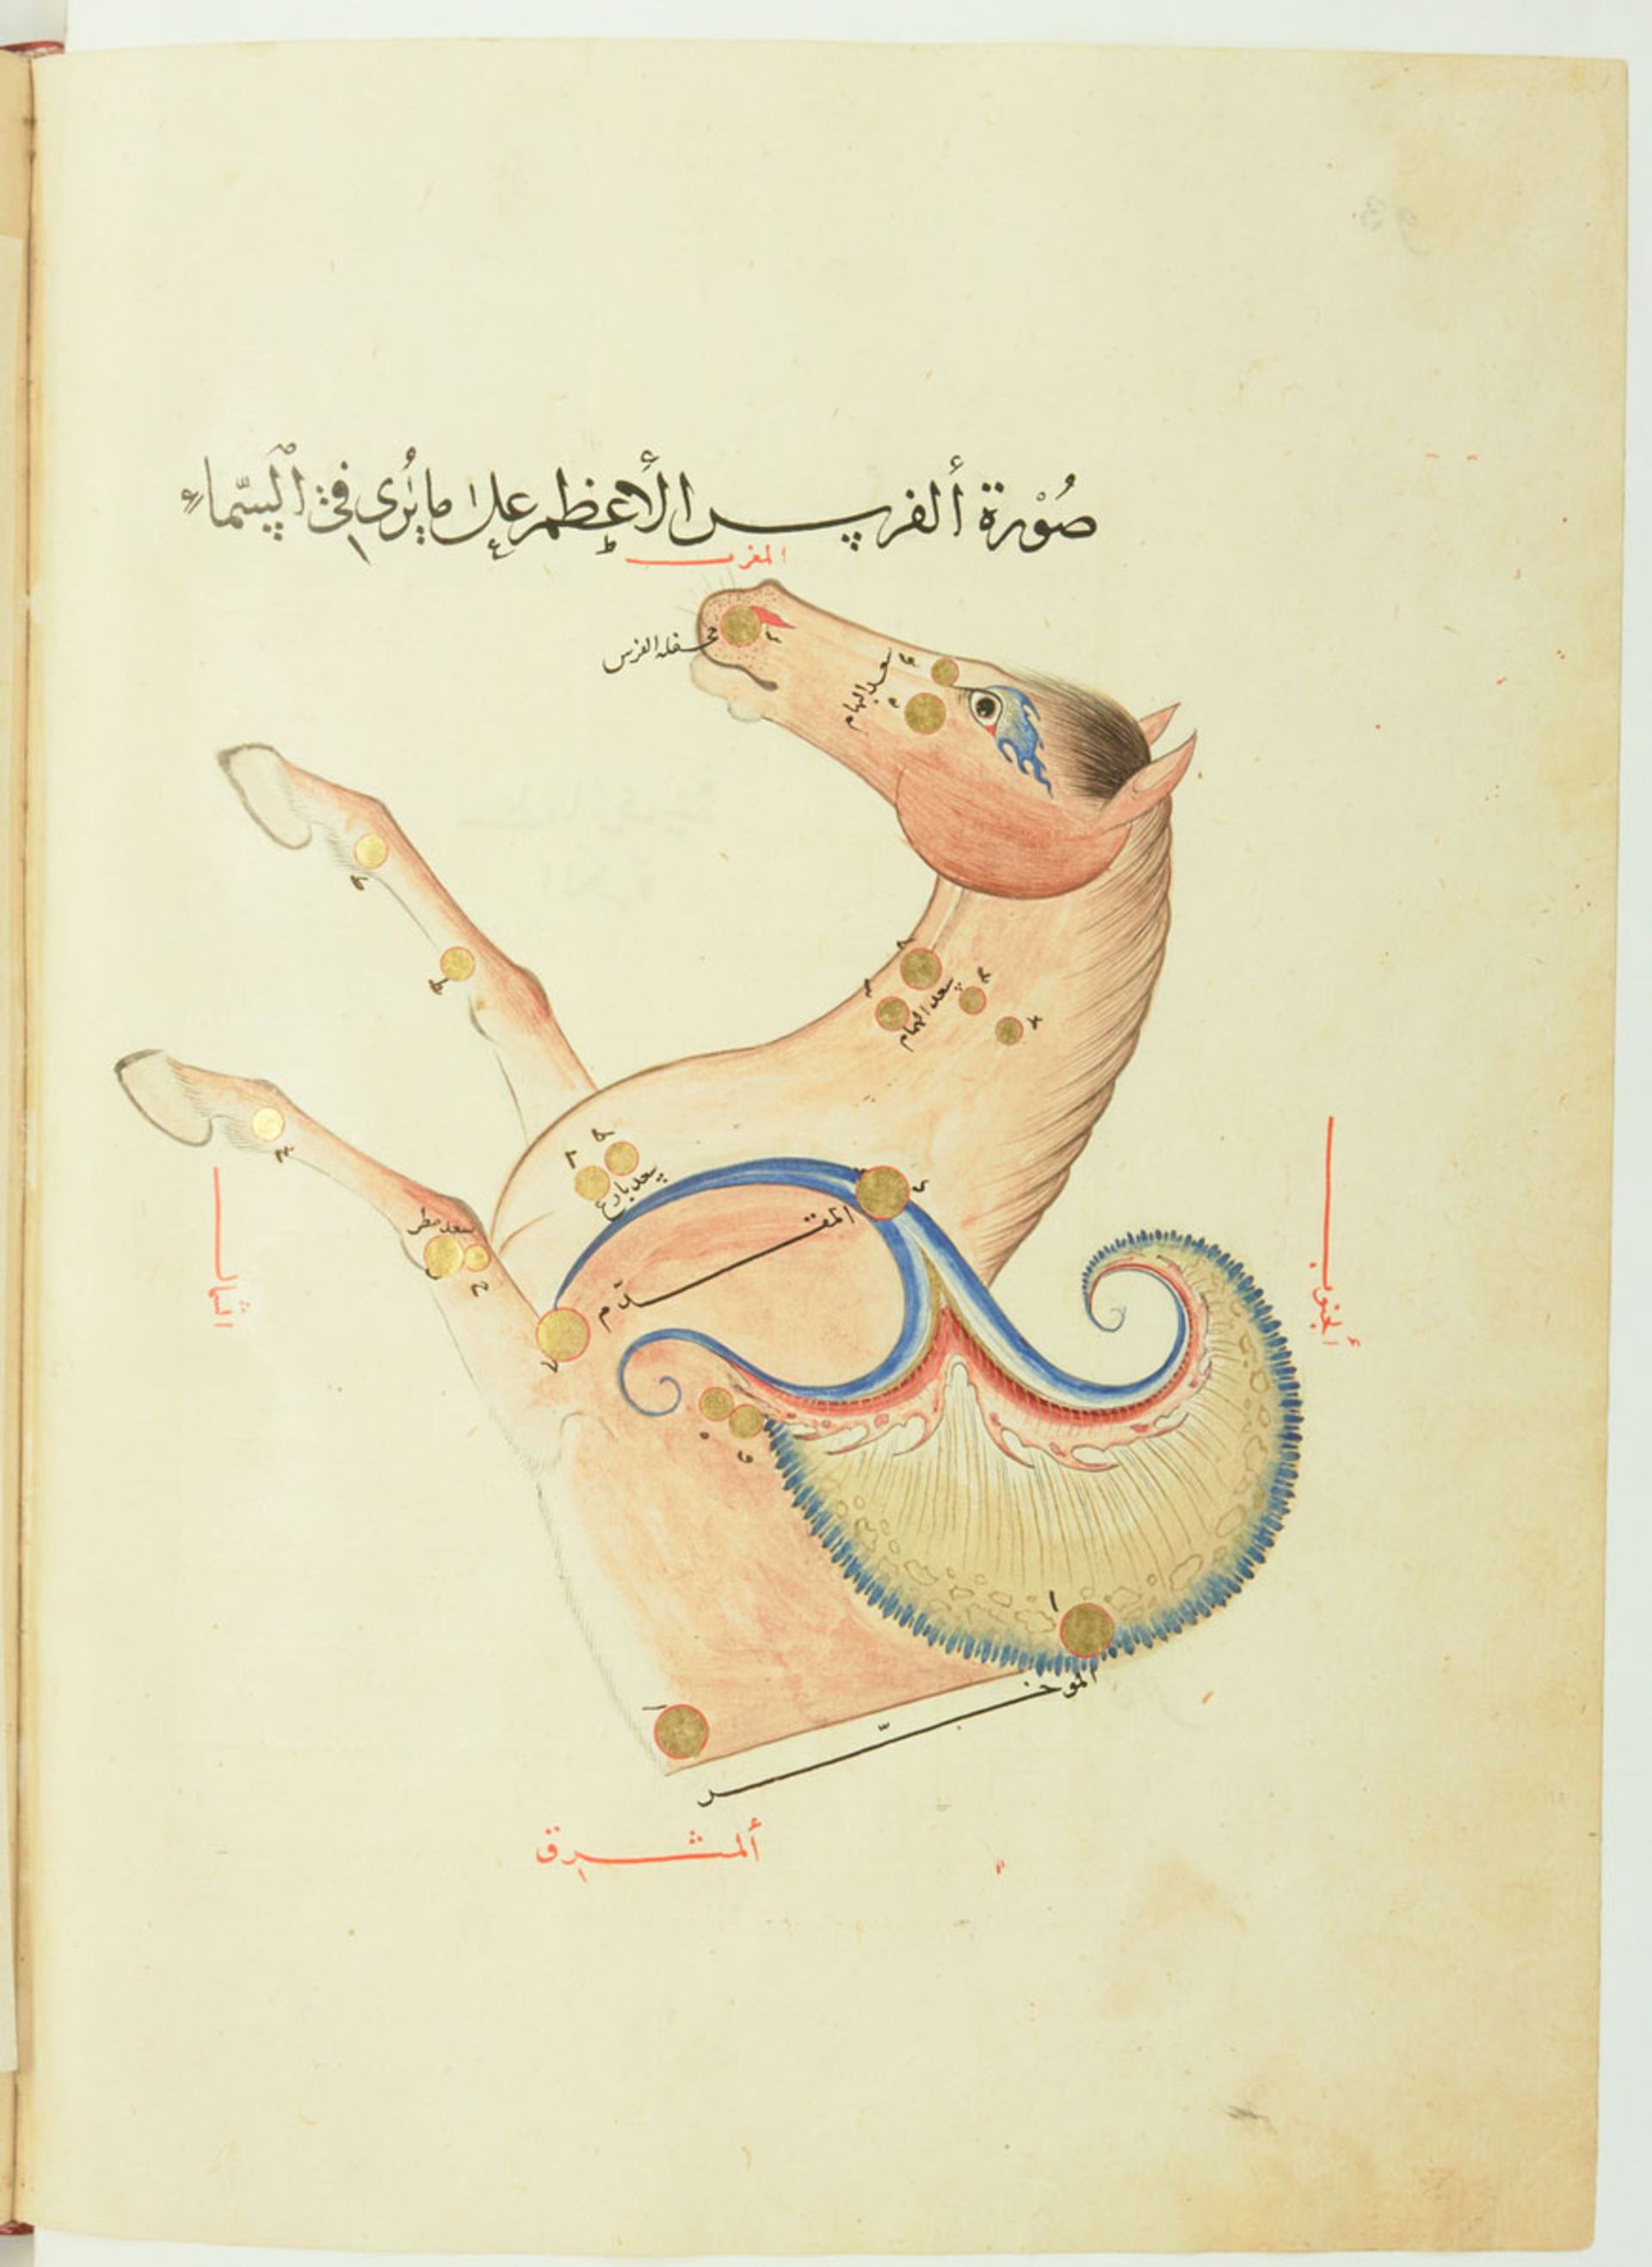 نقاشی صورت فلکی اسب بالدار صوفی الغ بیگ